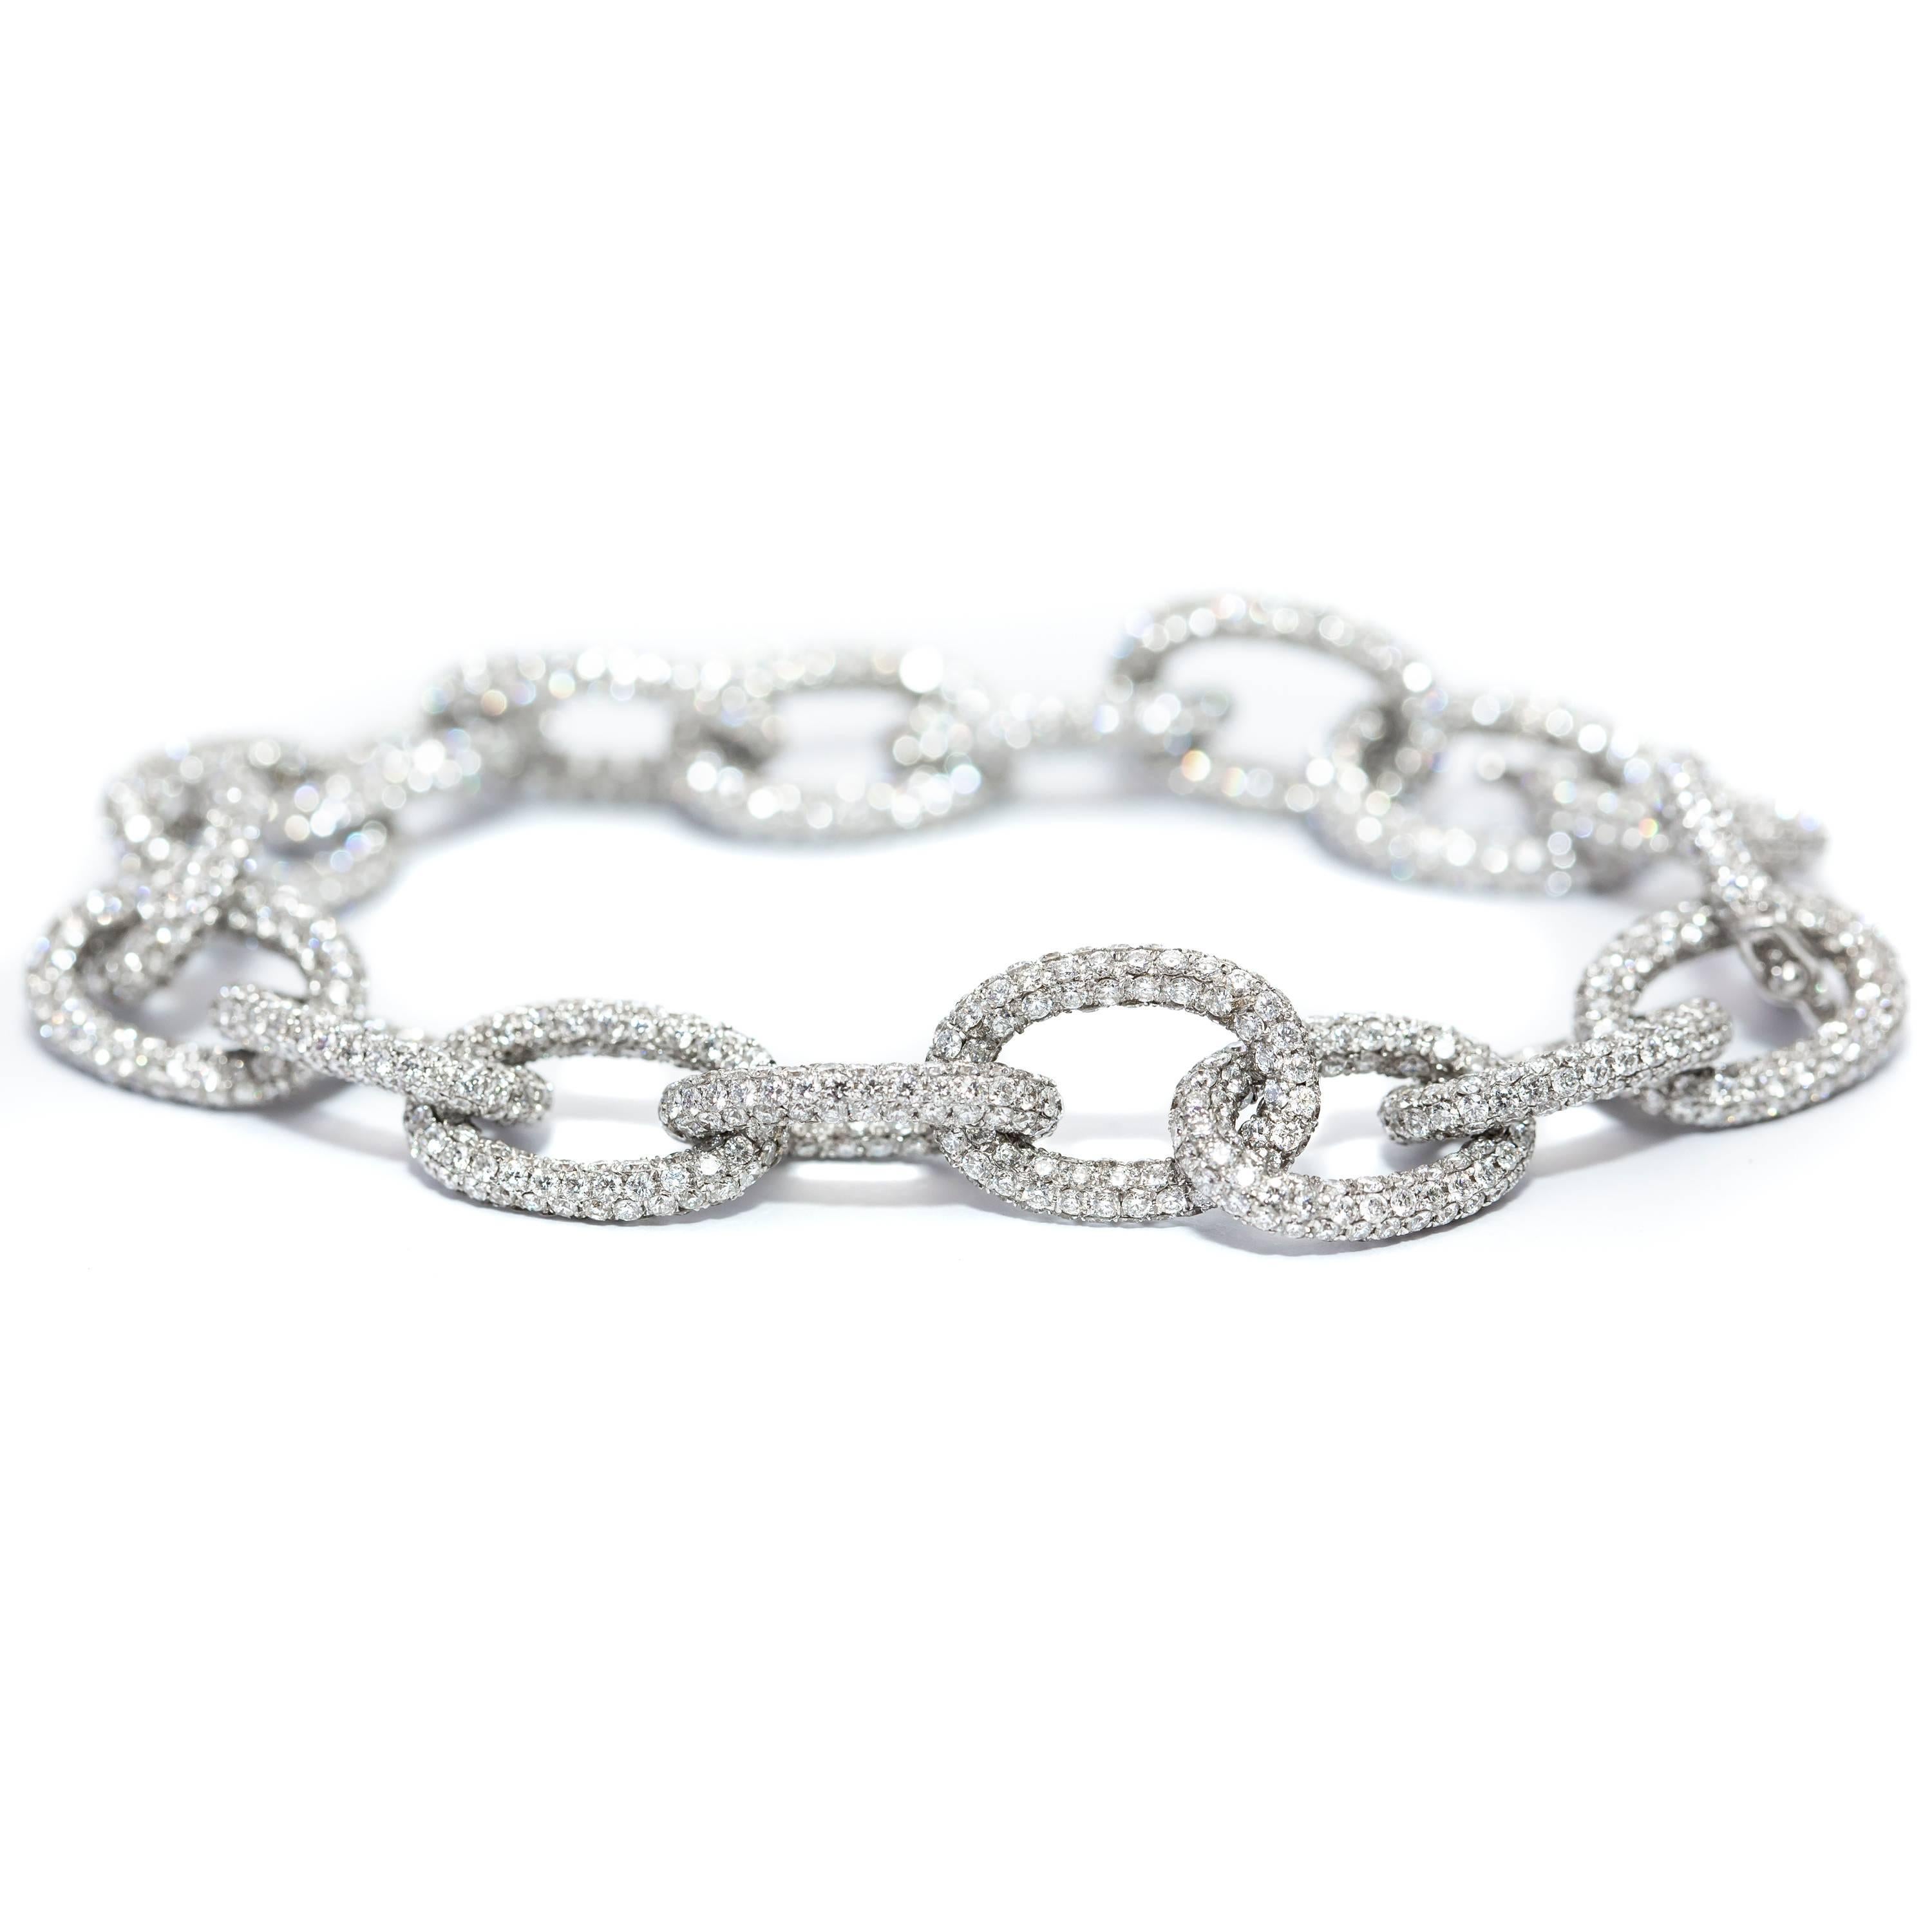 Ce magnifique bracelet chaîne en or blanc 18 carats avec diamants ronds de couleur G et de clarté VS1 sertis en pavé est serti en or blanc 18 carats. Une pièce qui brille et se distingue comme aucune autre. Poinçon britannique. 